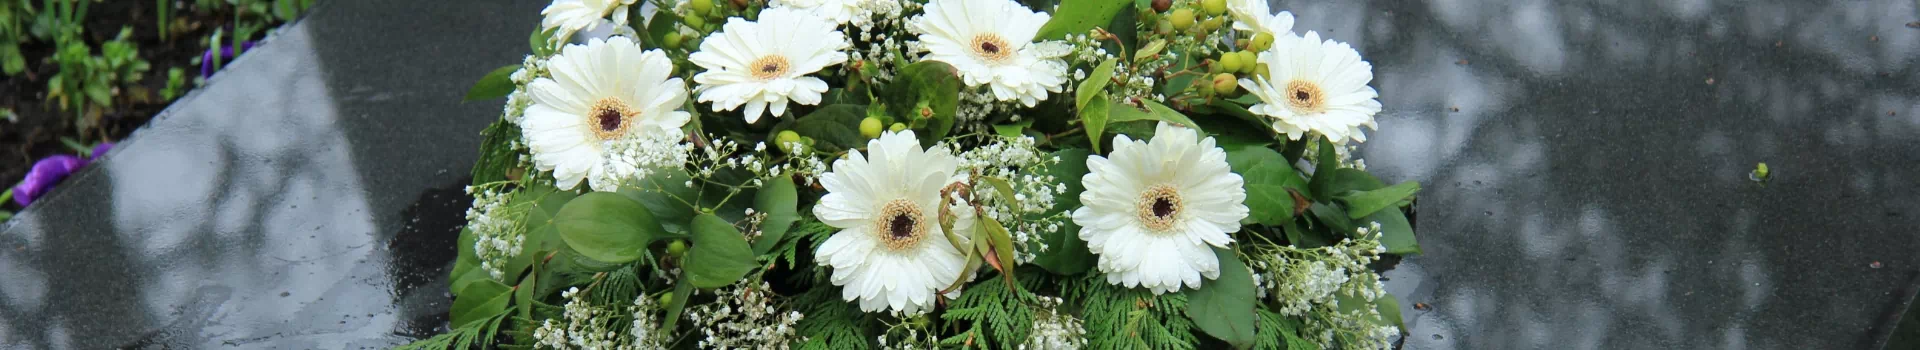 biały bukiet kwiatów